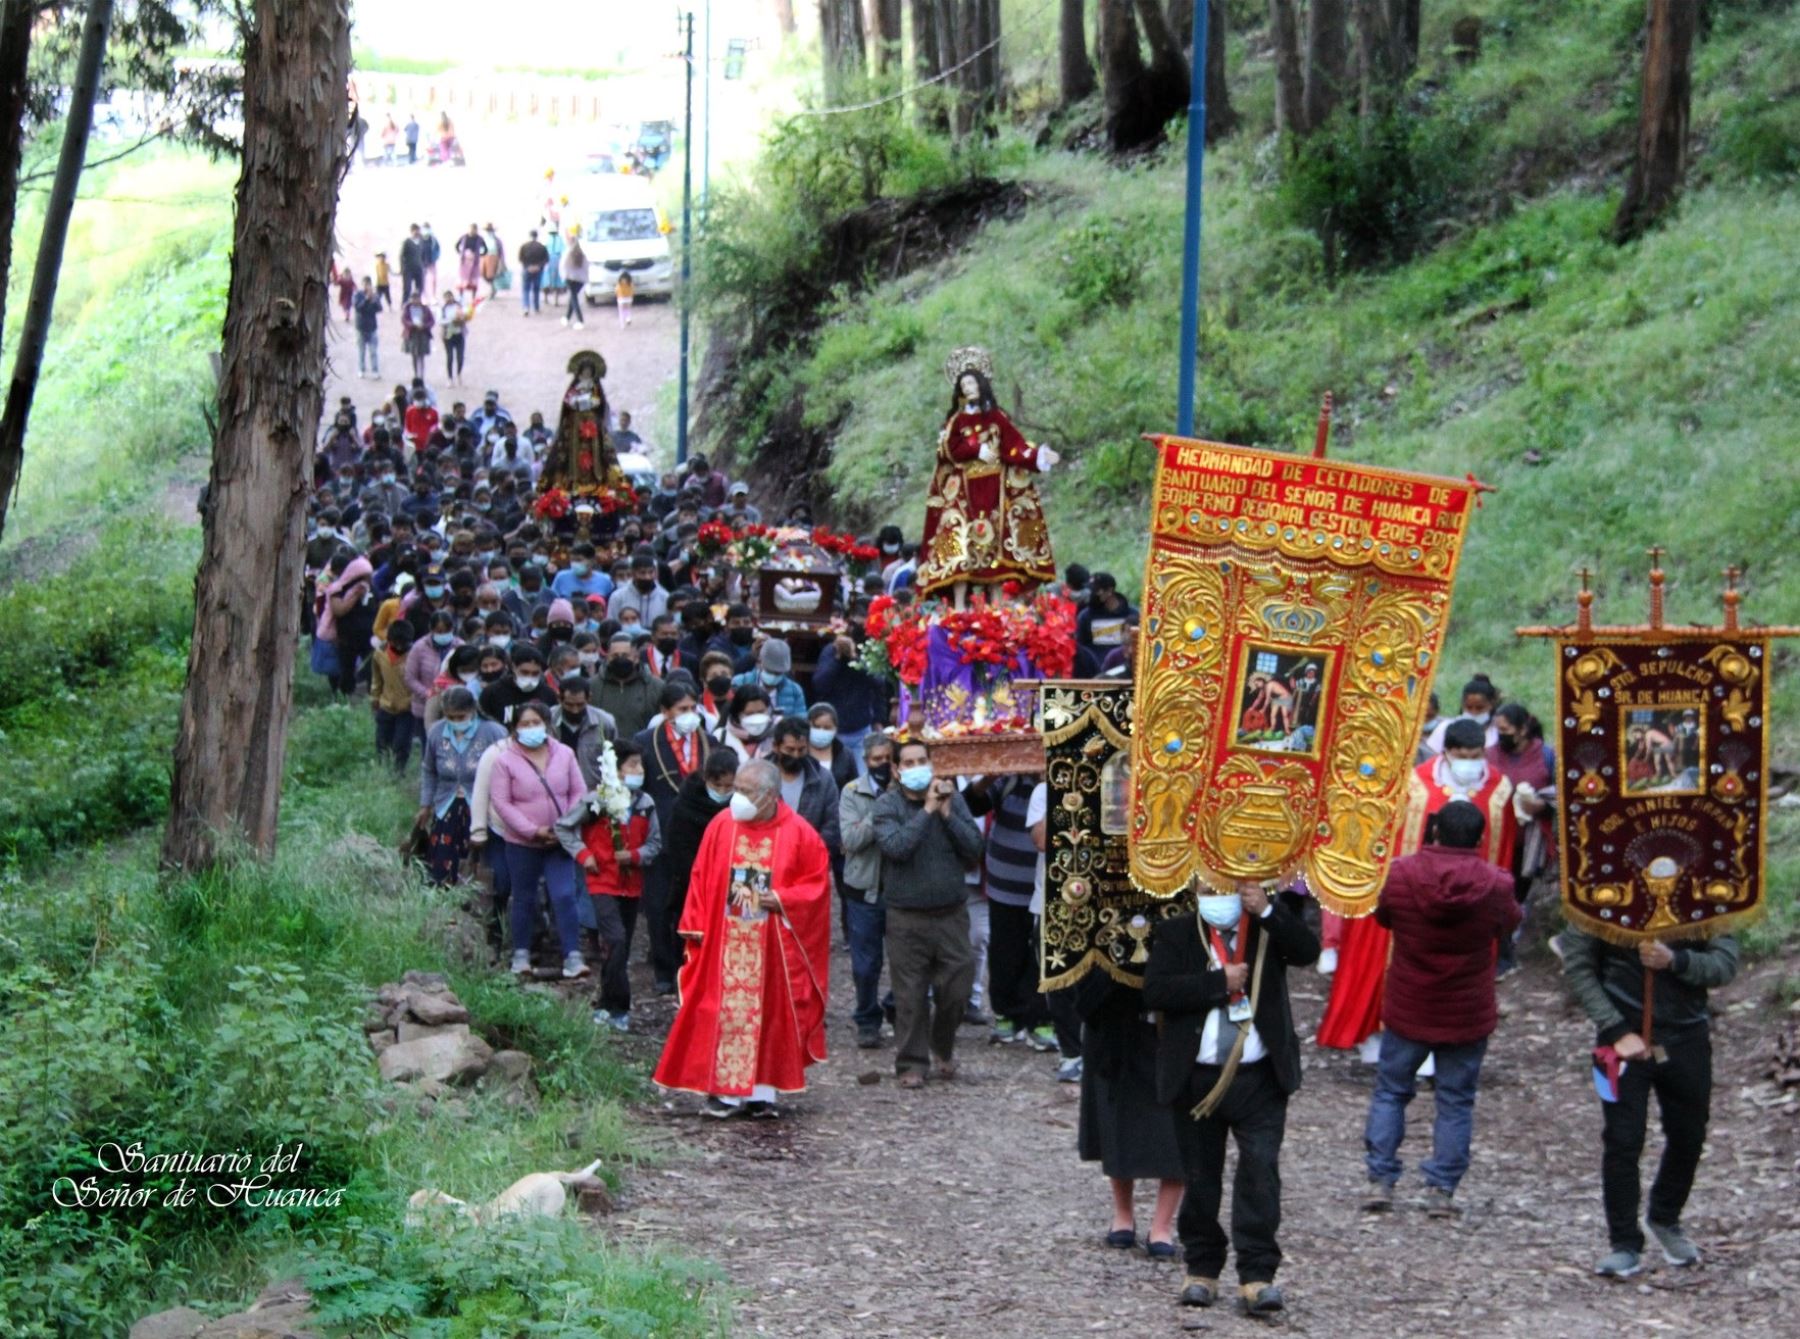 Cusco elabora plan para evitar incendios forestales durante peregrinaje al Señor de Huanca